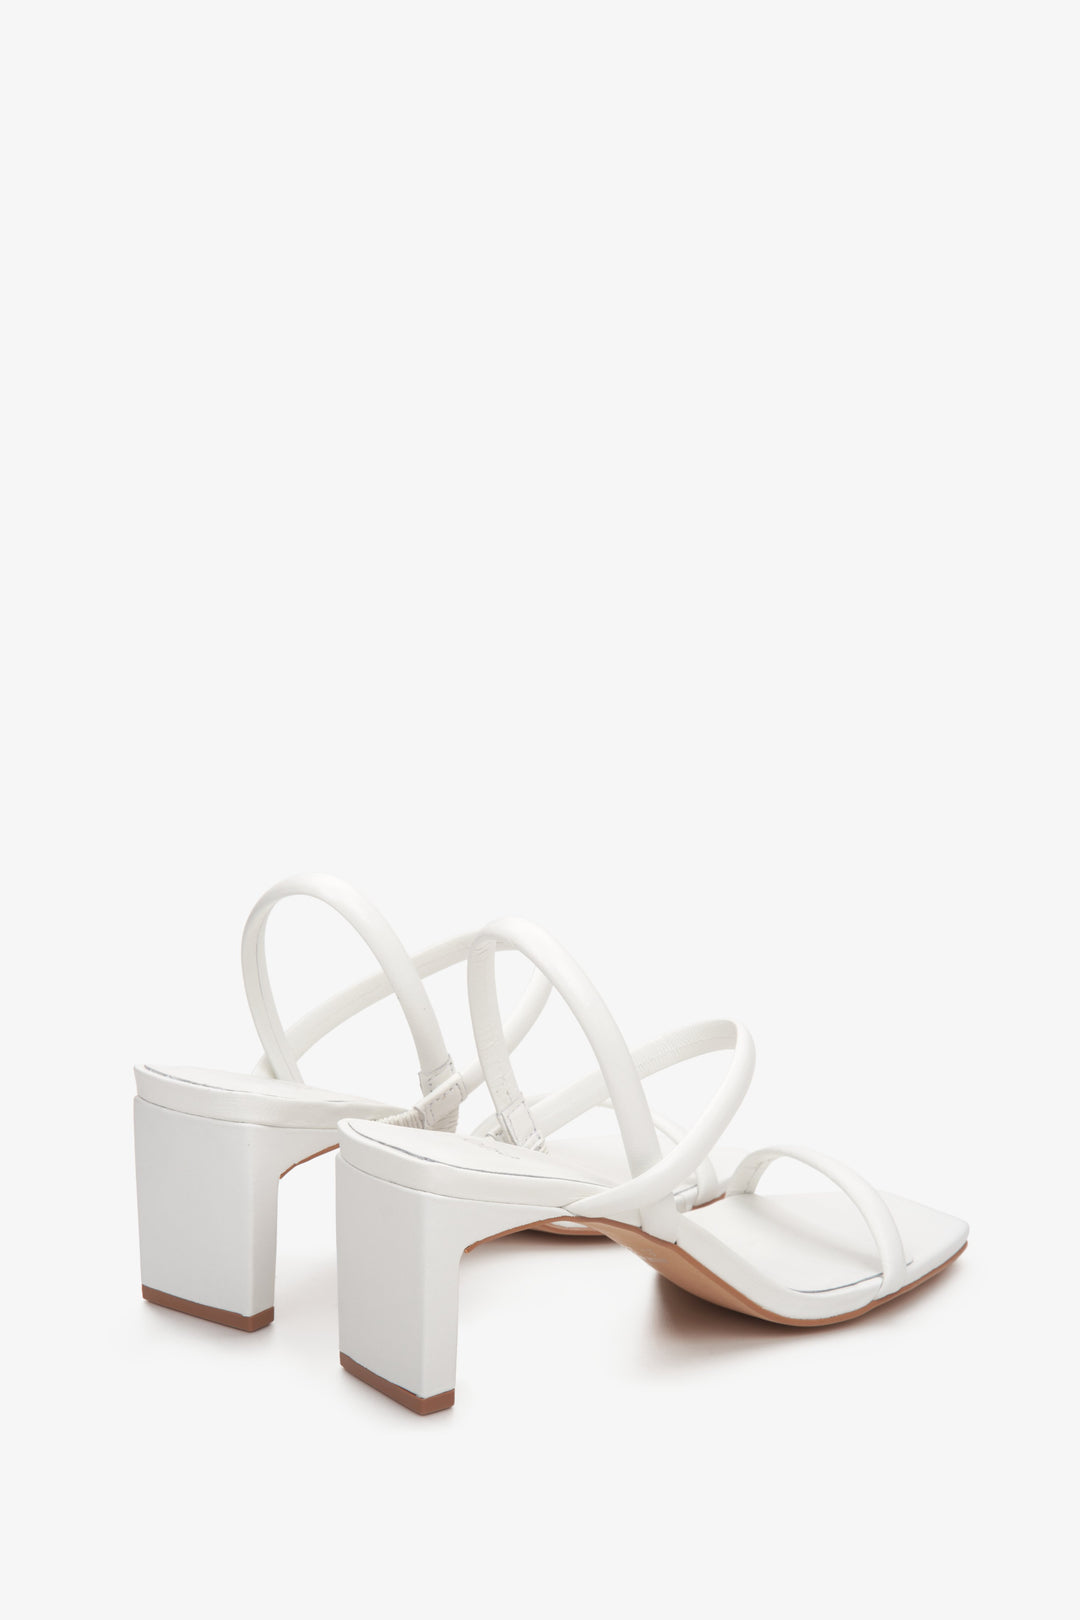 Skórzane, białe sandały damskie na słupku Estro - zbliżenie na linię boczną butów.